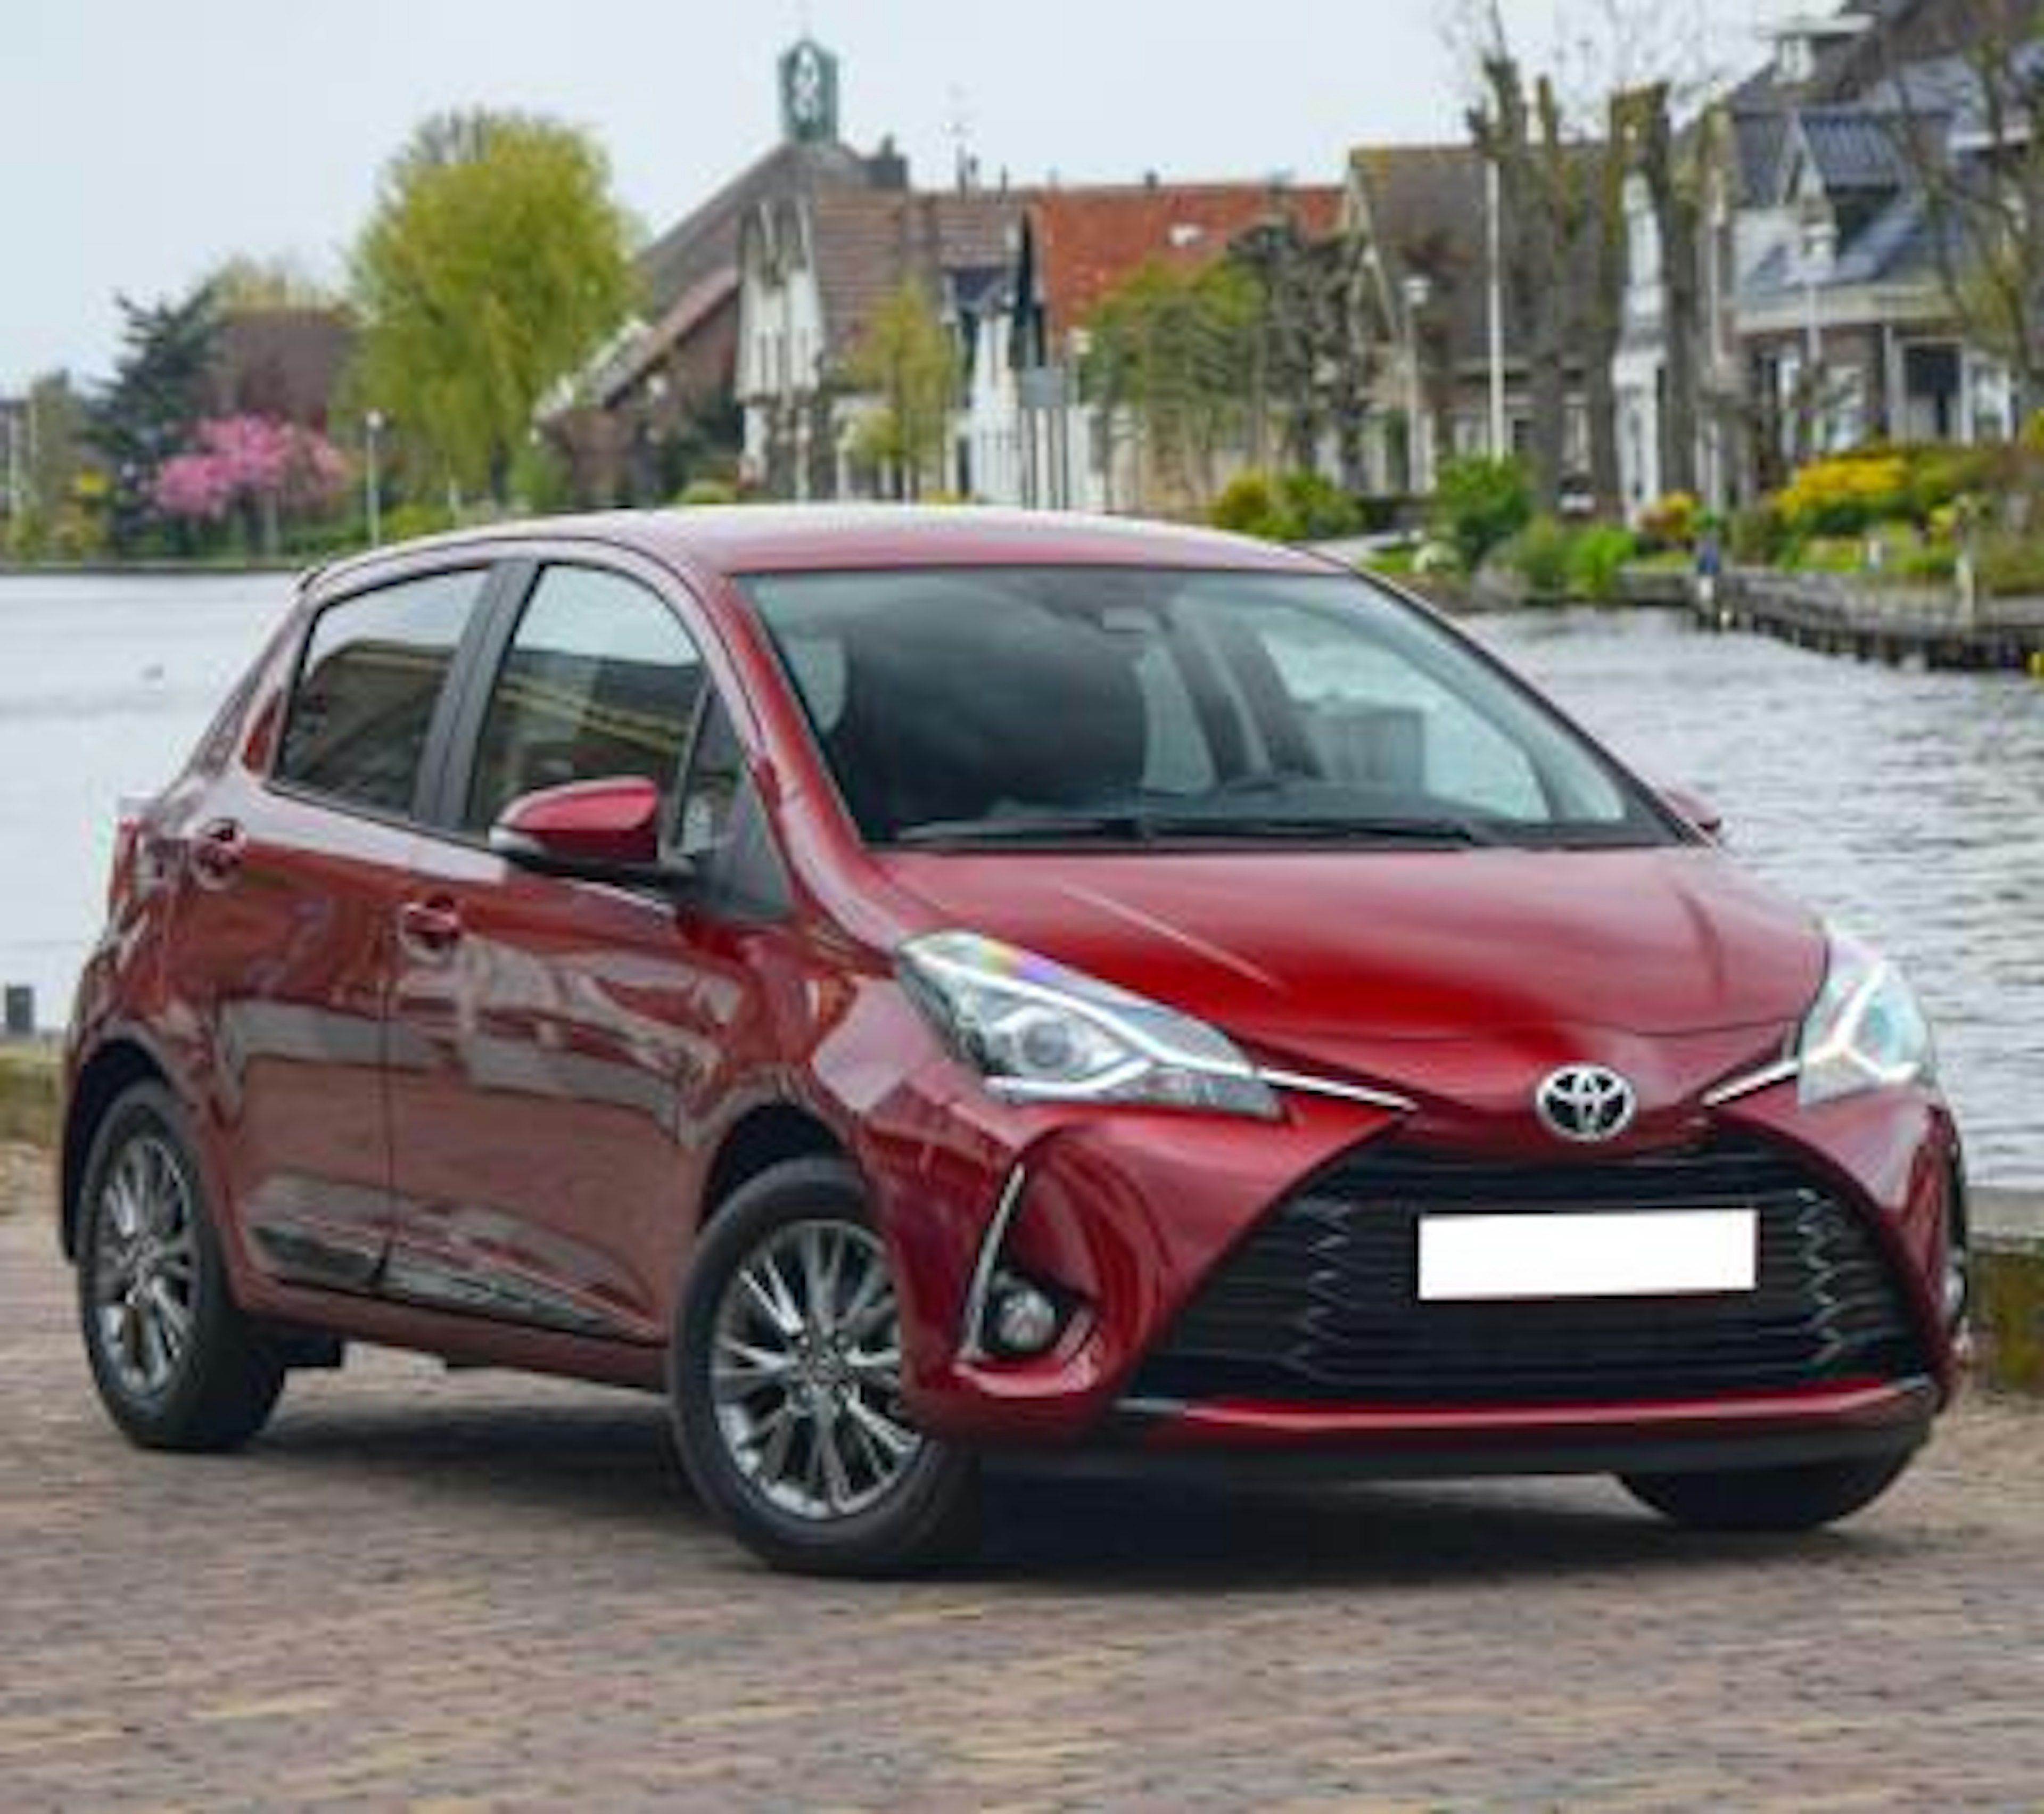 Révision Toyota Yaris : quand la faire et à quel prix ?